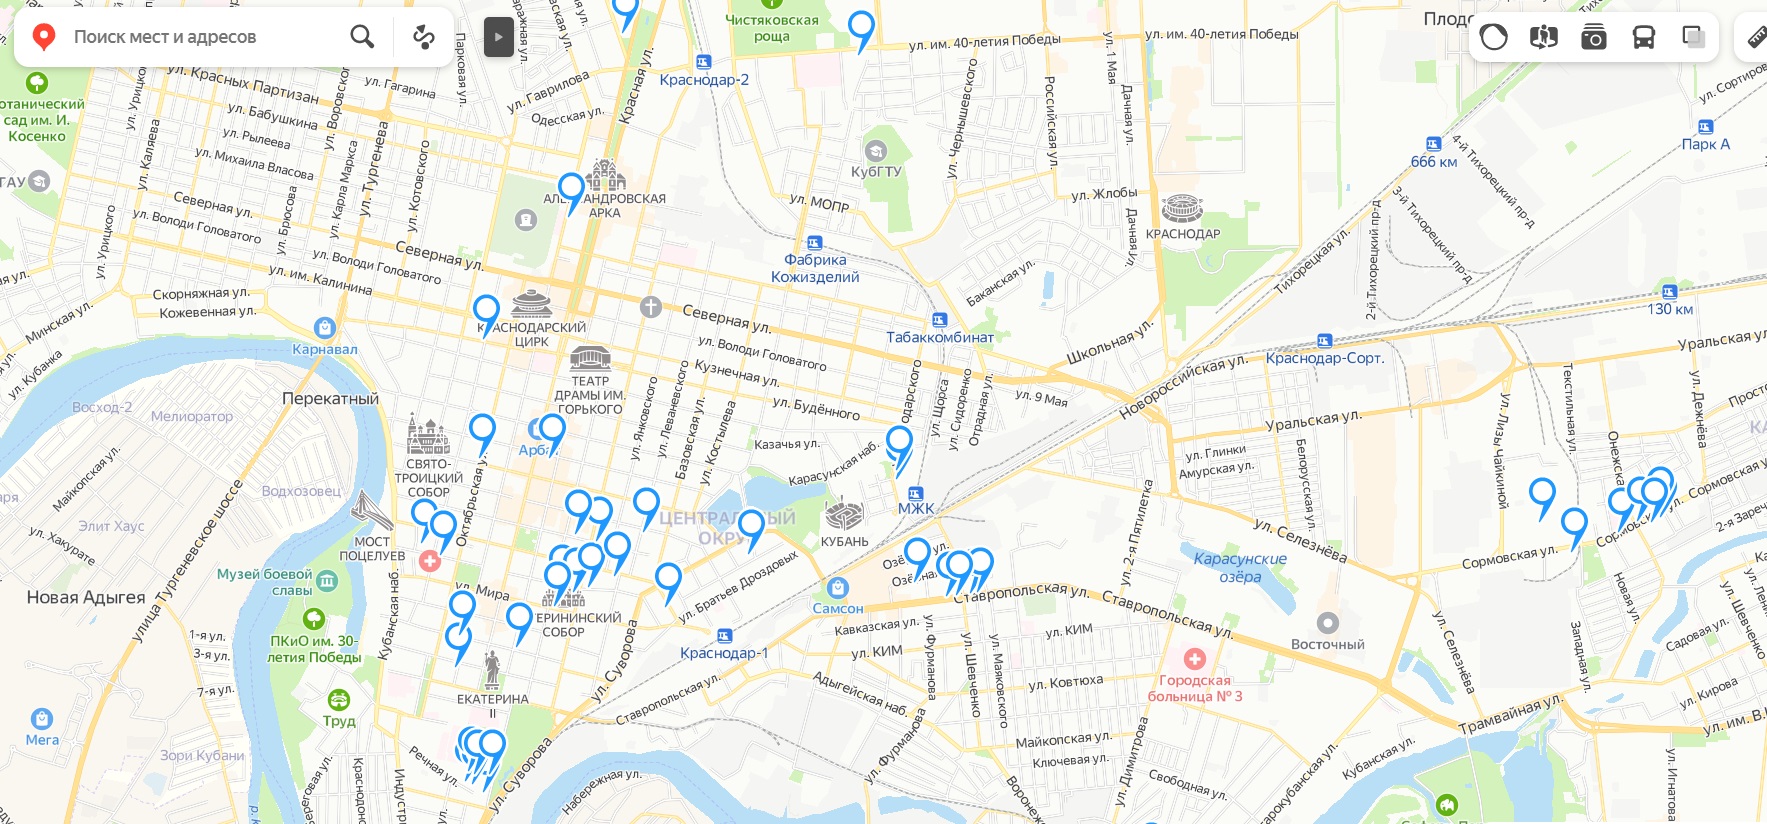 Панорама Краснодара на карте - фото улиц города онлайн | Карты городов России и мира